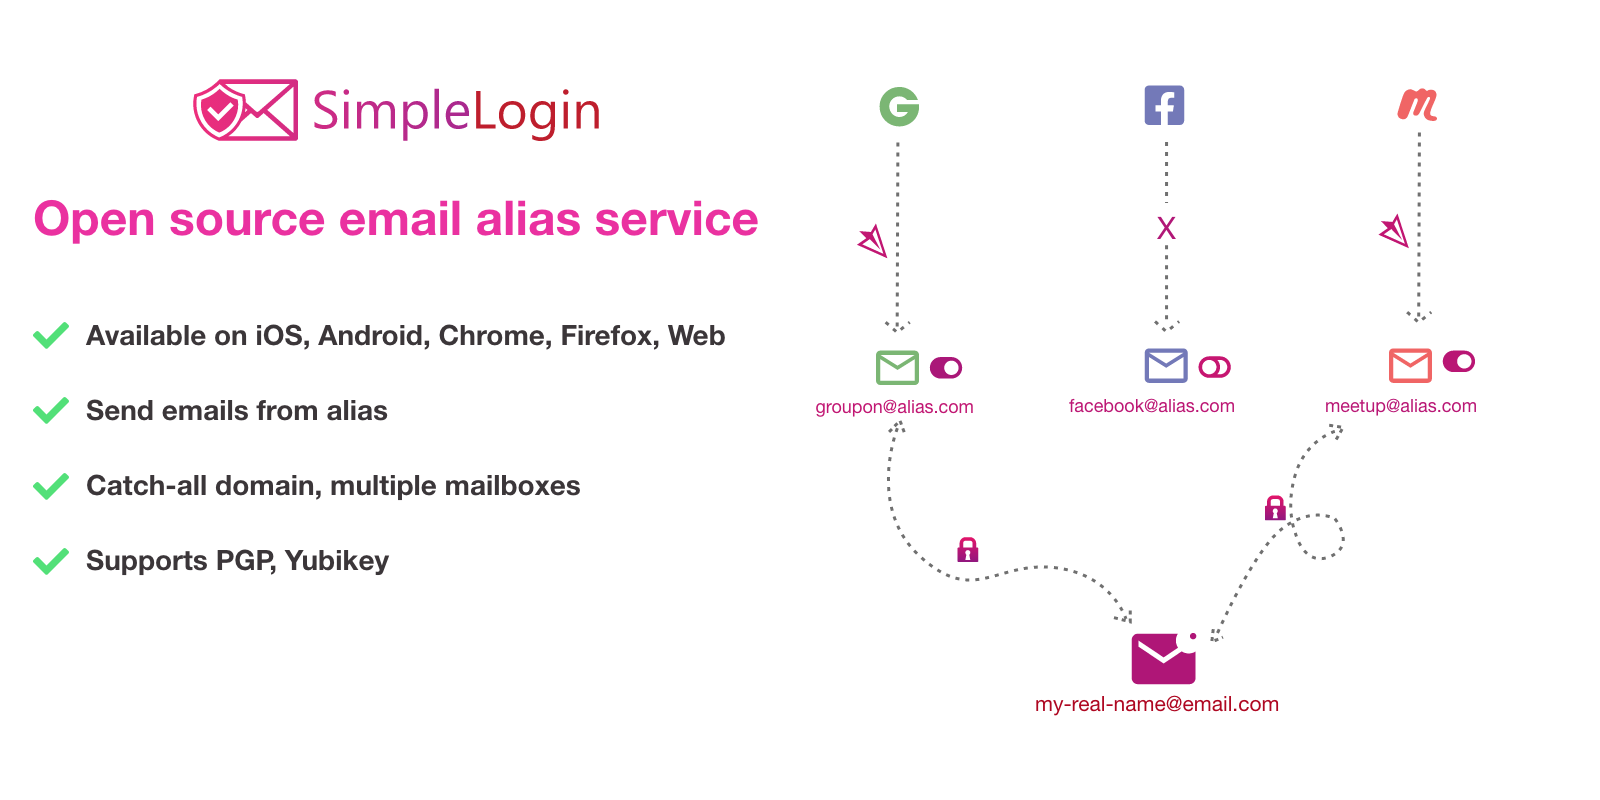 SimpleLogin | Protéger votre vie privée avec les alias mail